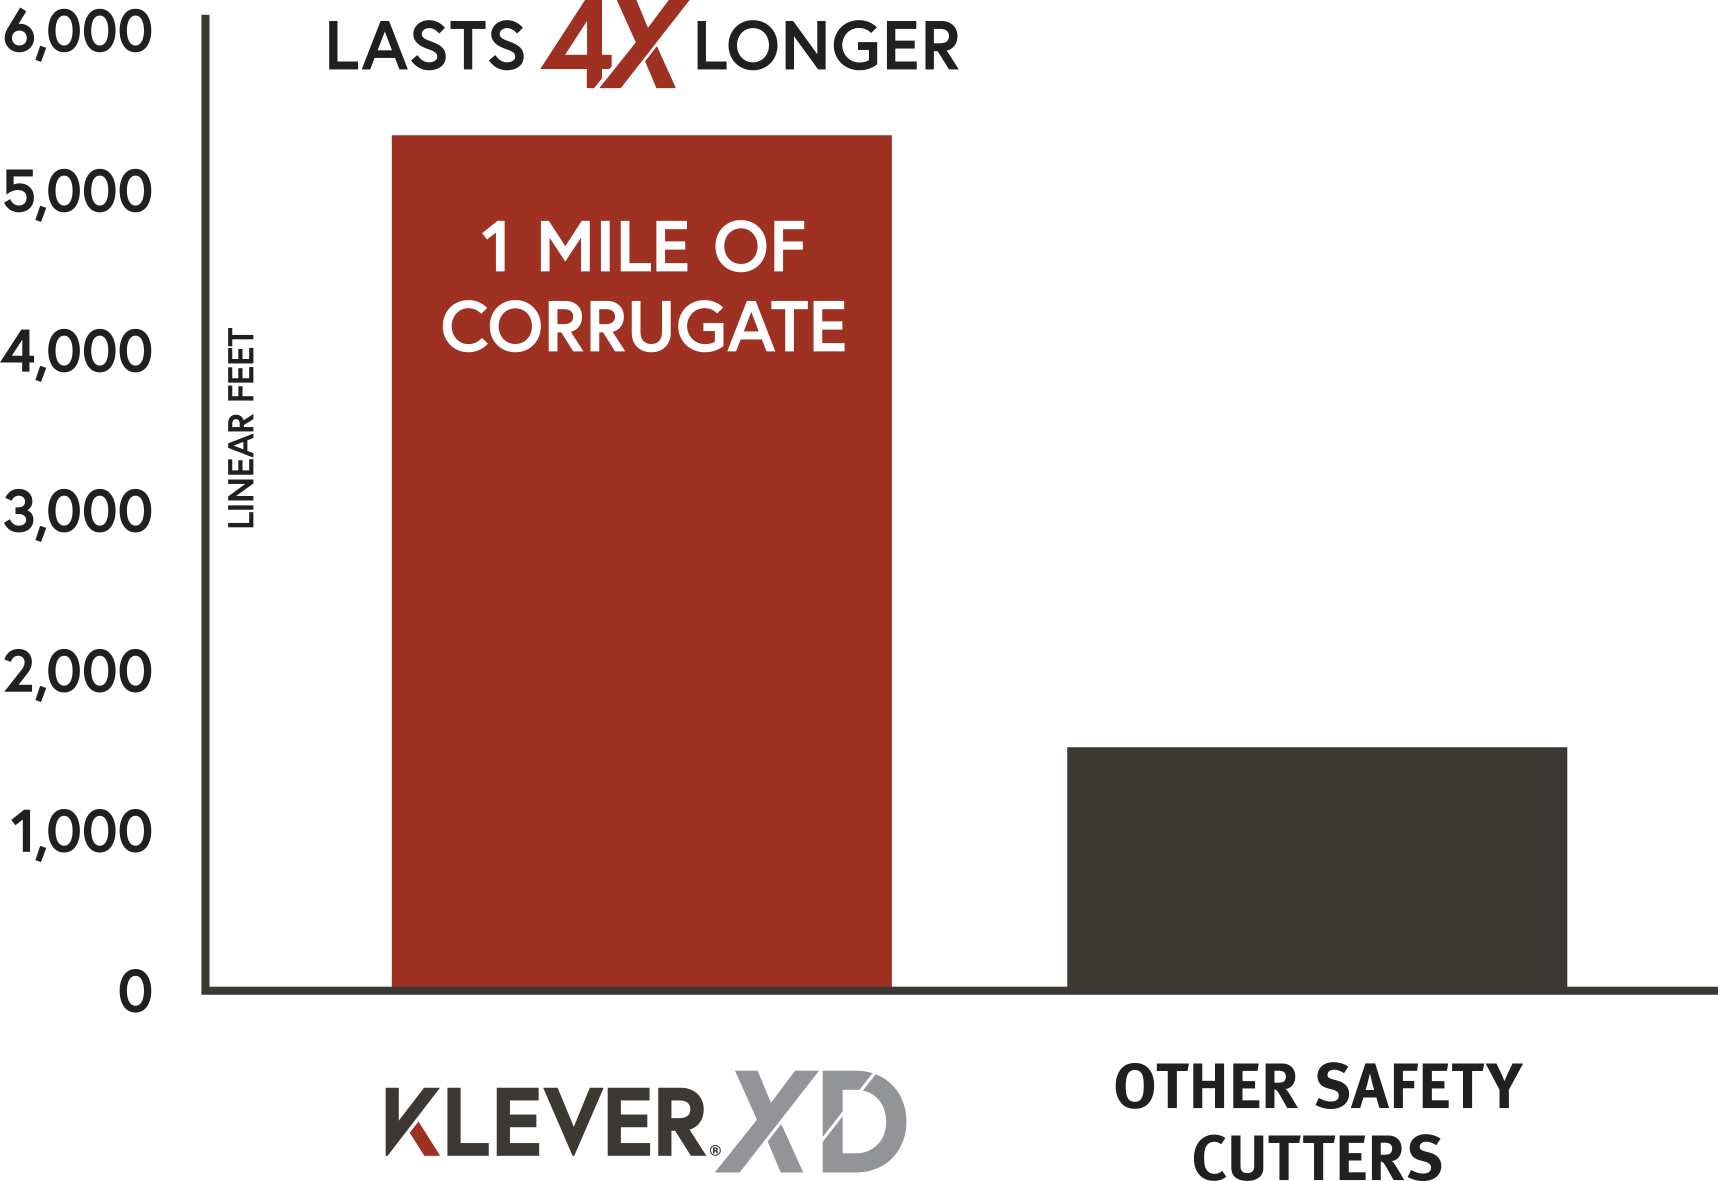 lasts-4x-longer-chart